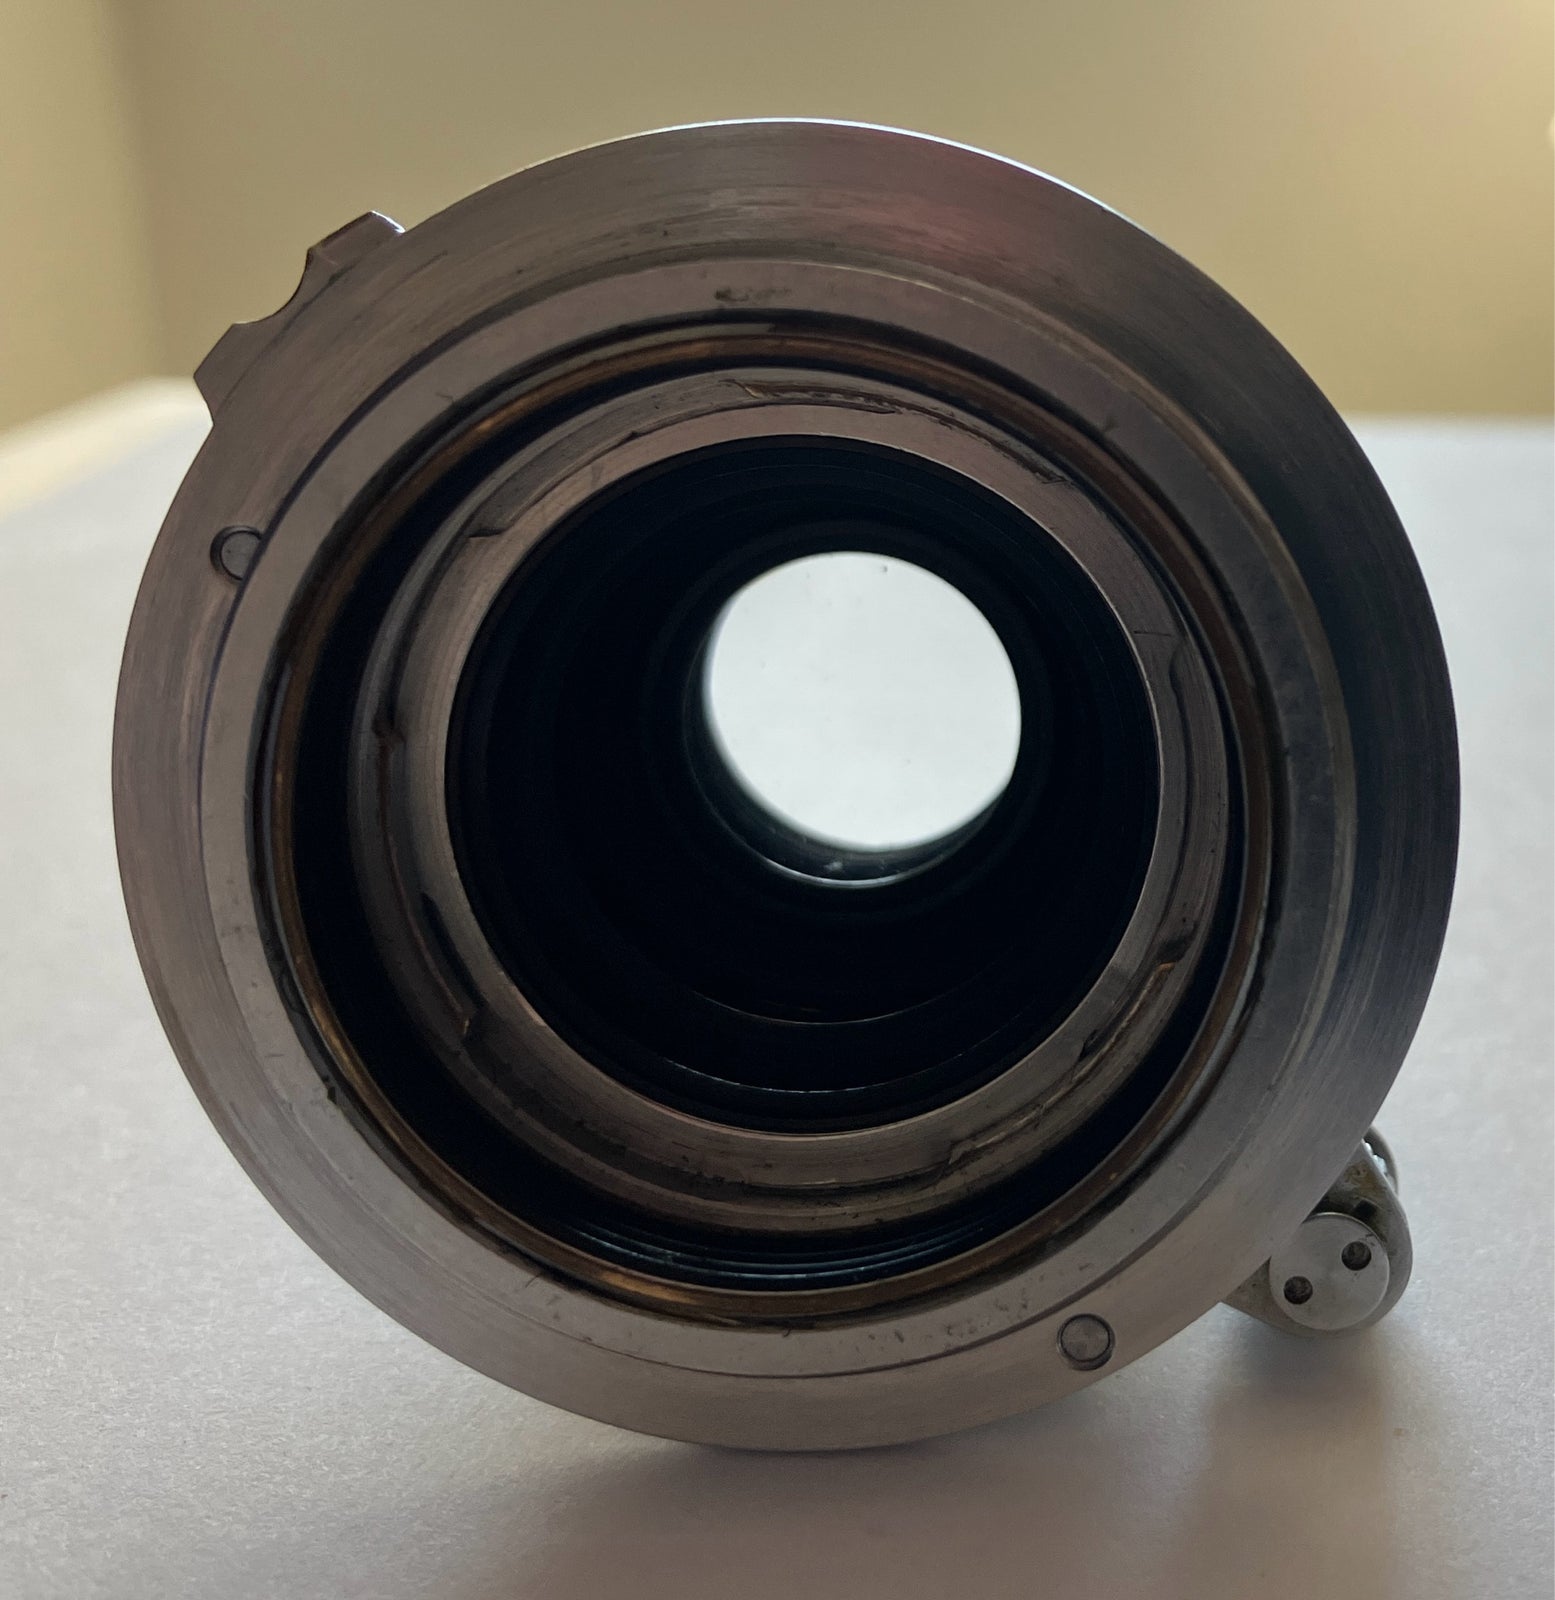 Leica normal objektiv., Leica, Elmar 50mm f=5cm 1:3.5 red